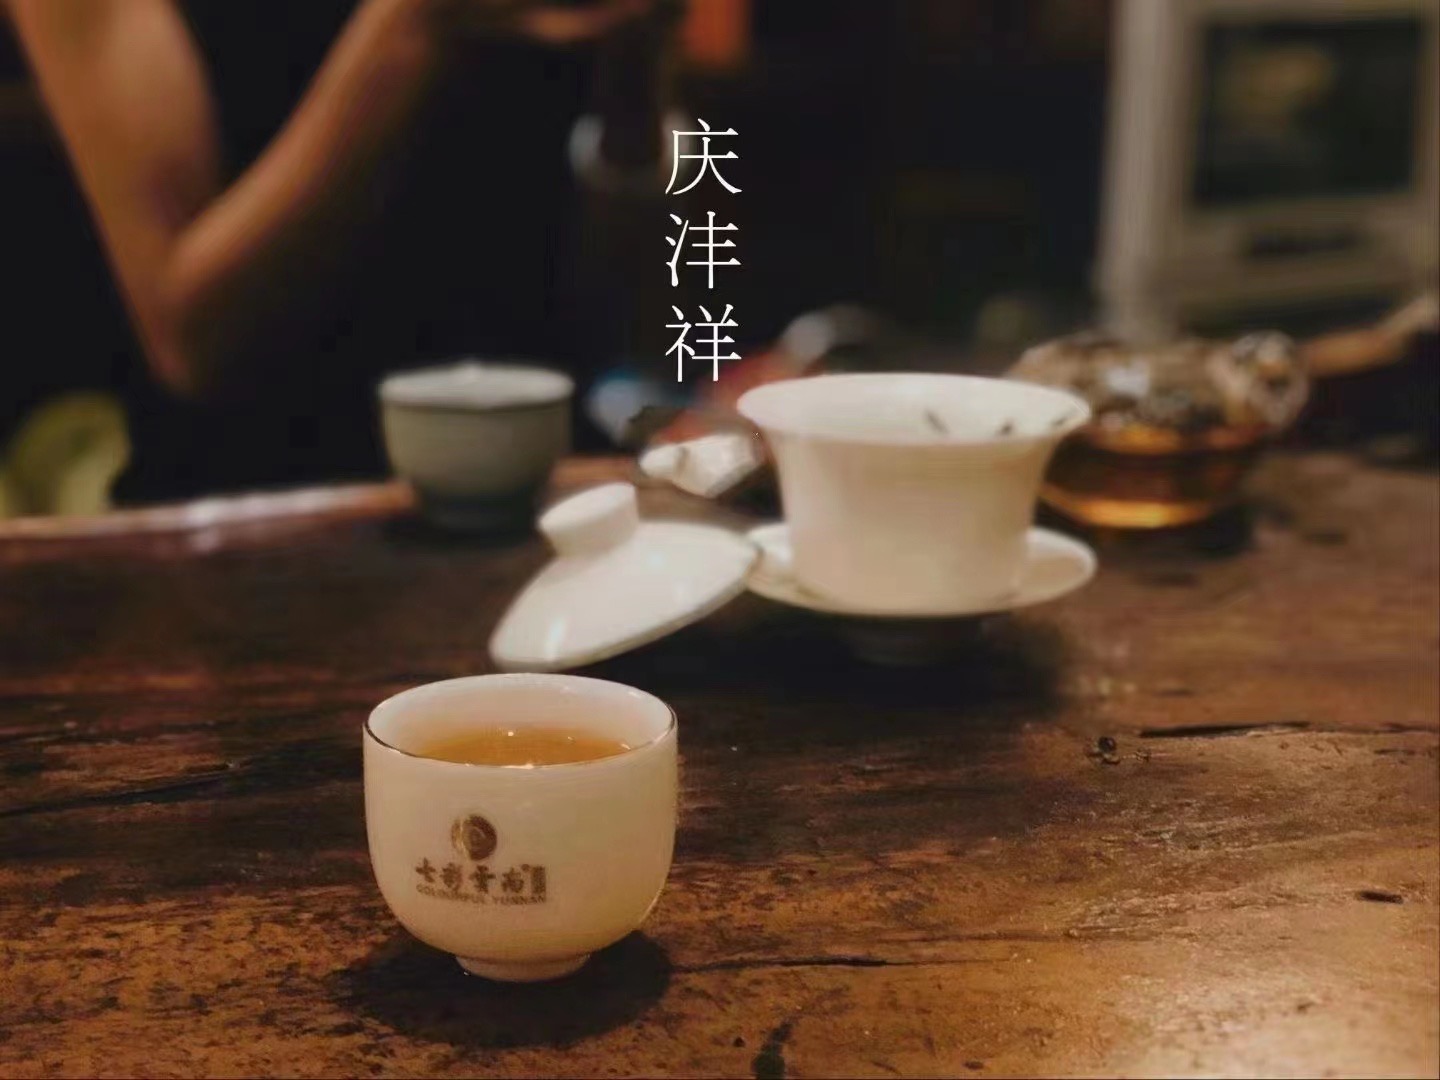 全国连锁七彩云南普洱茶专卖店招聘全职兼职